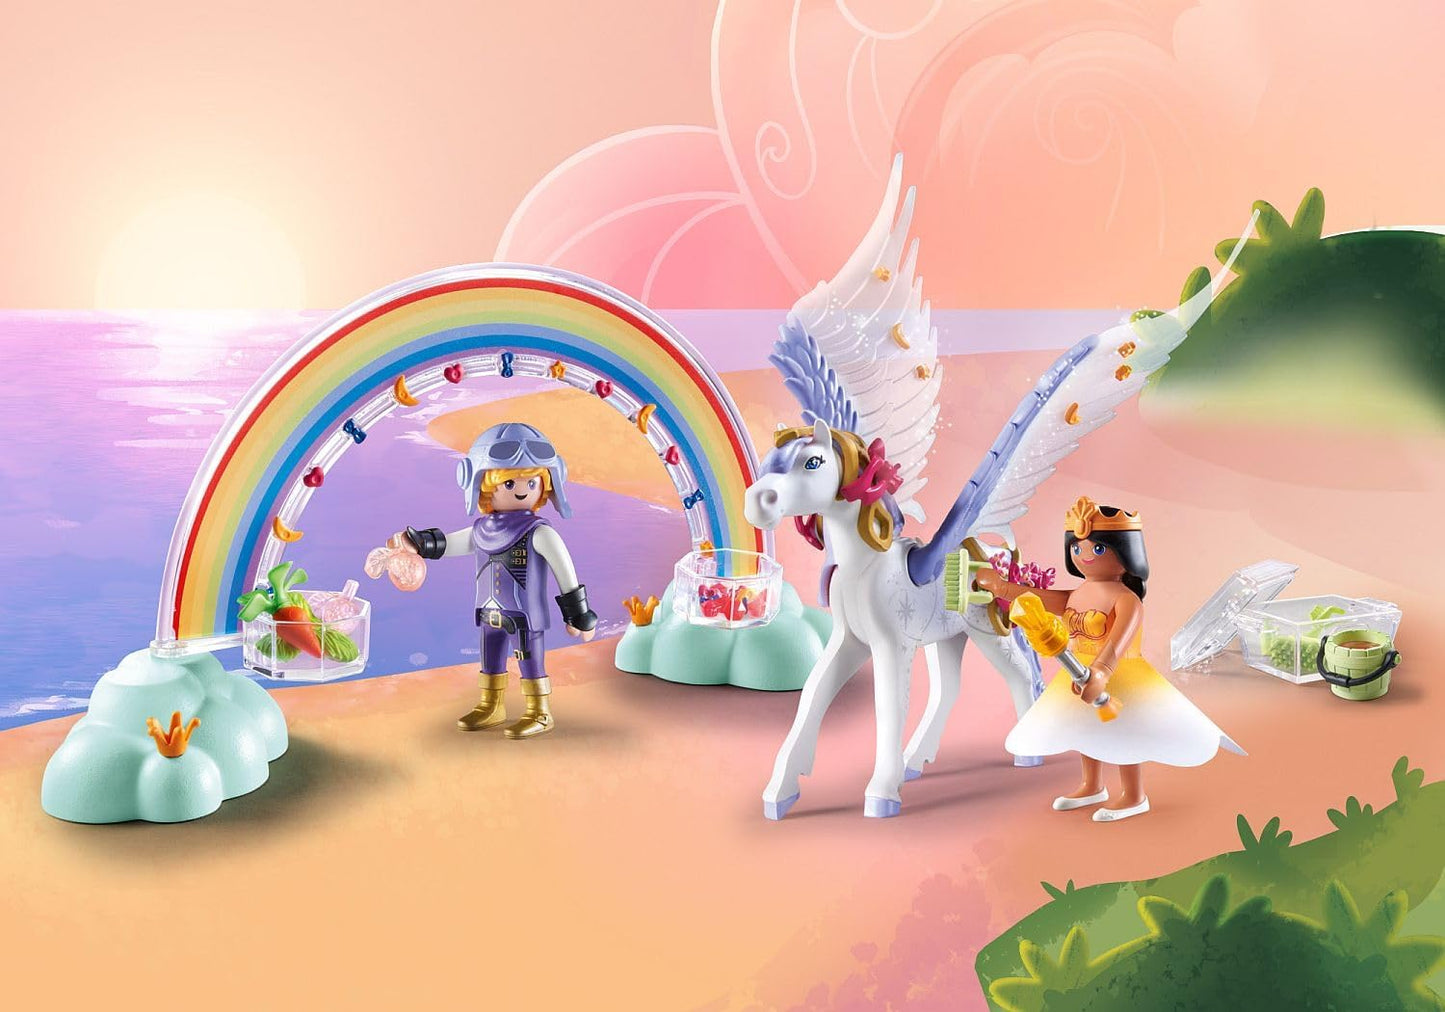 Playmobil 71361 Arco-íris Pegasus com arco-íris nas nuvens, mundo mágico de conto de fadas, dramatização divertida e imaginativa, conjuntos de jogos adequados para crianças de 4 anos ou mais